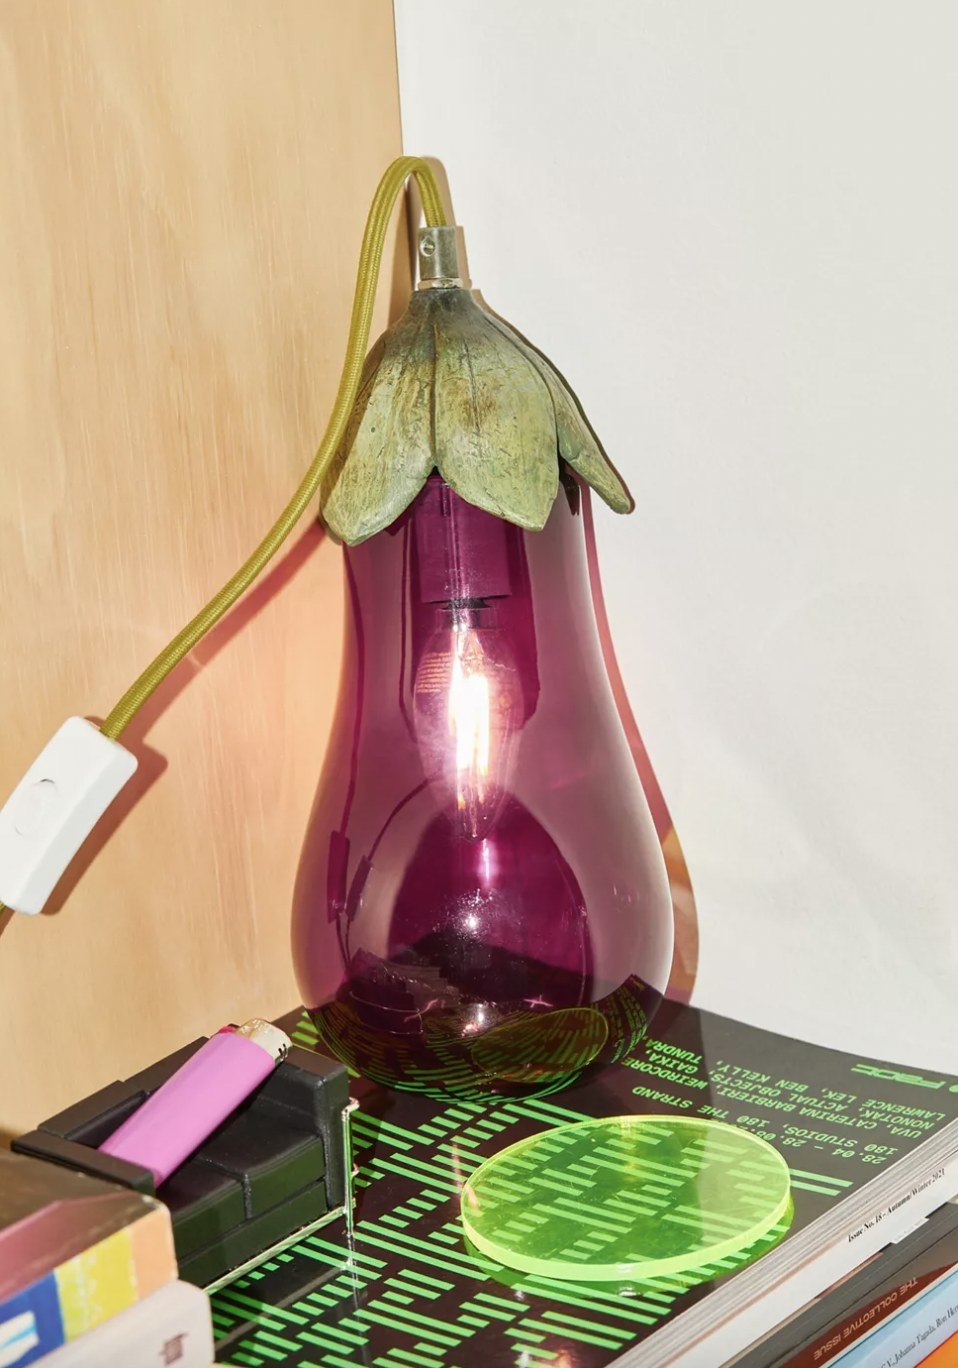 A glass eggplant lamp